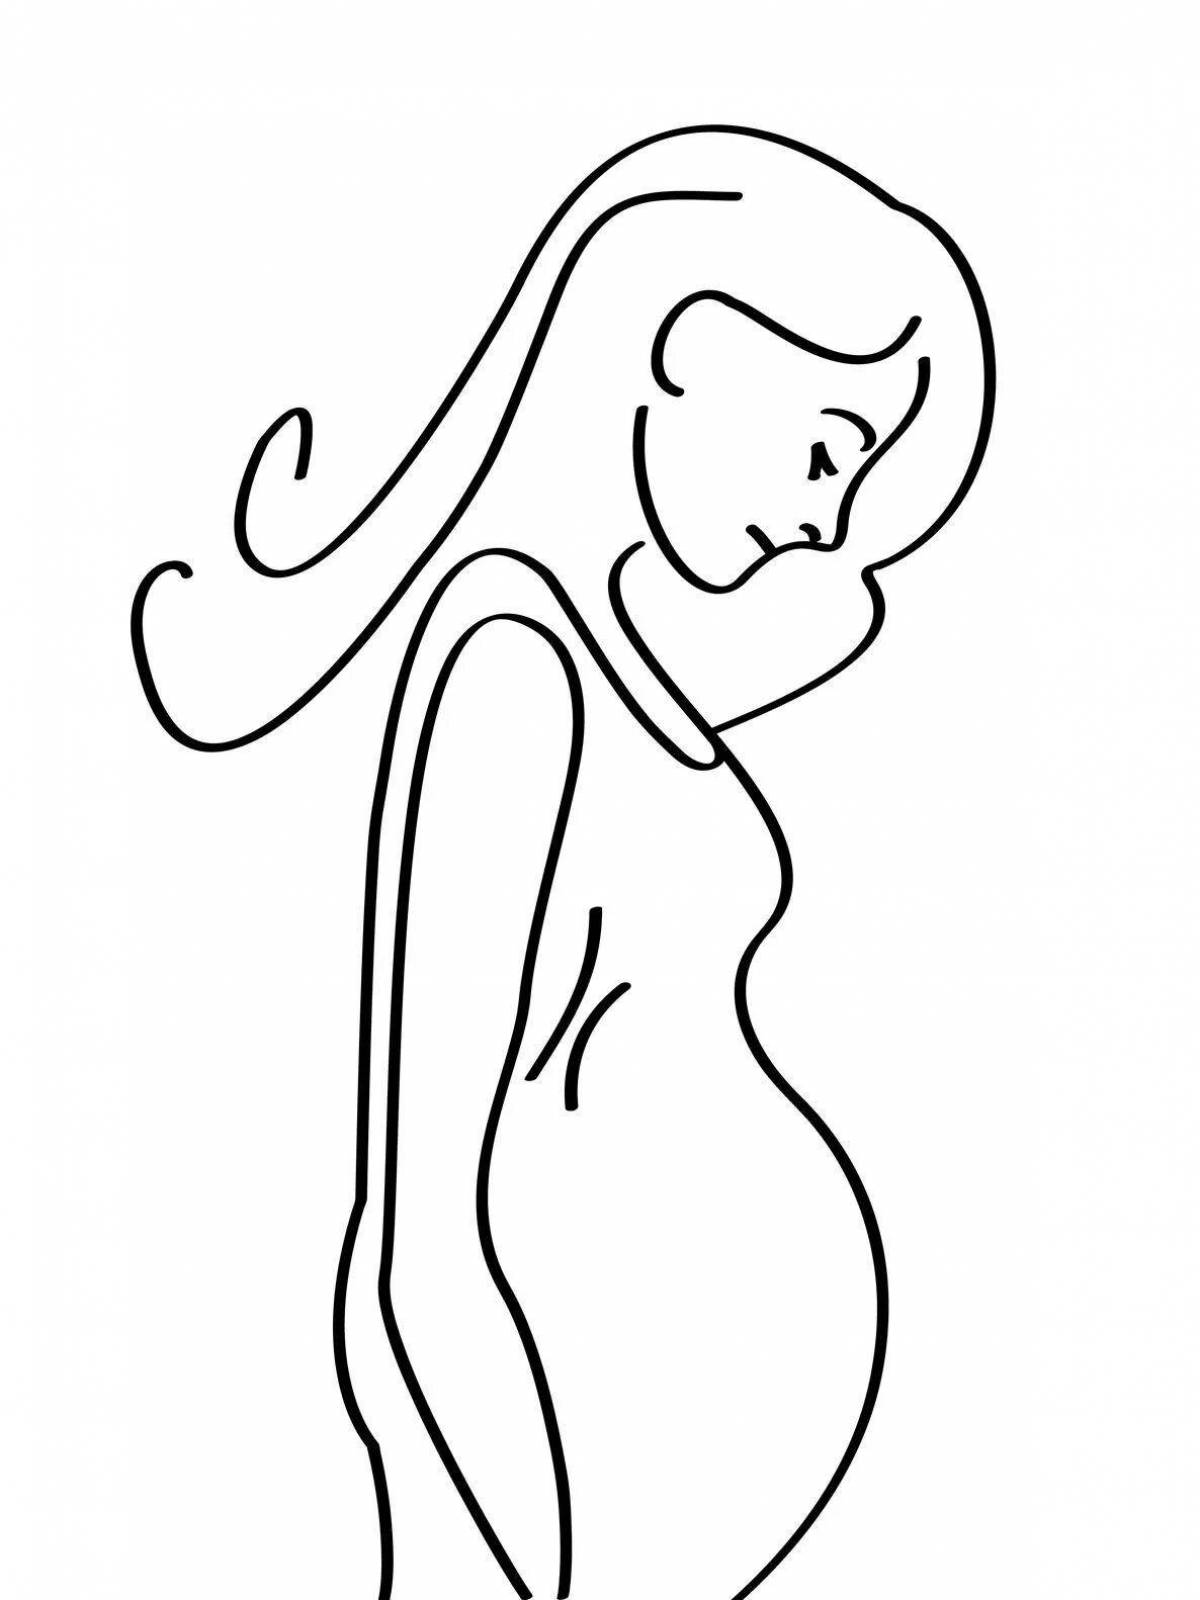 Великолепная раскраска беременной девушки